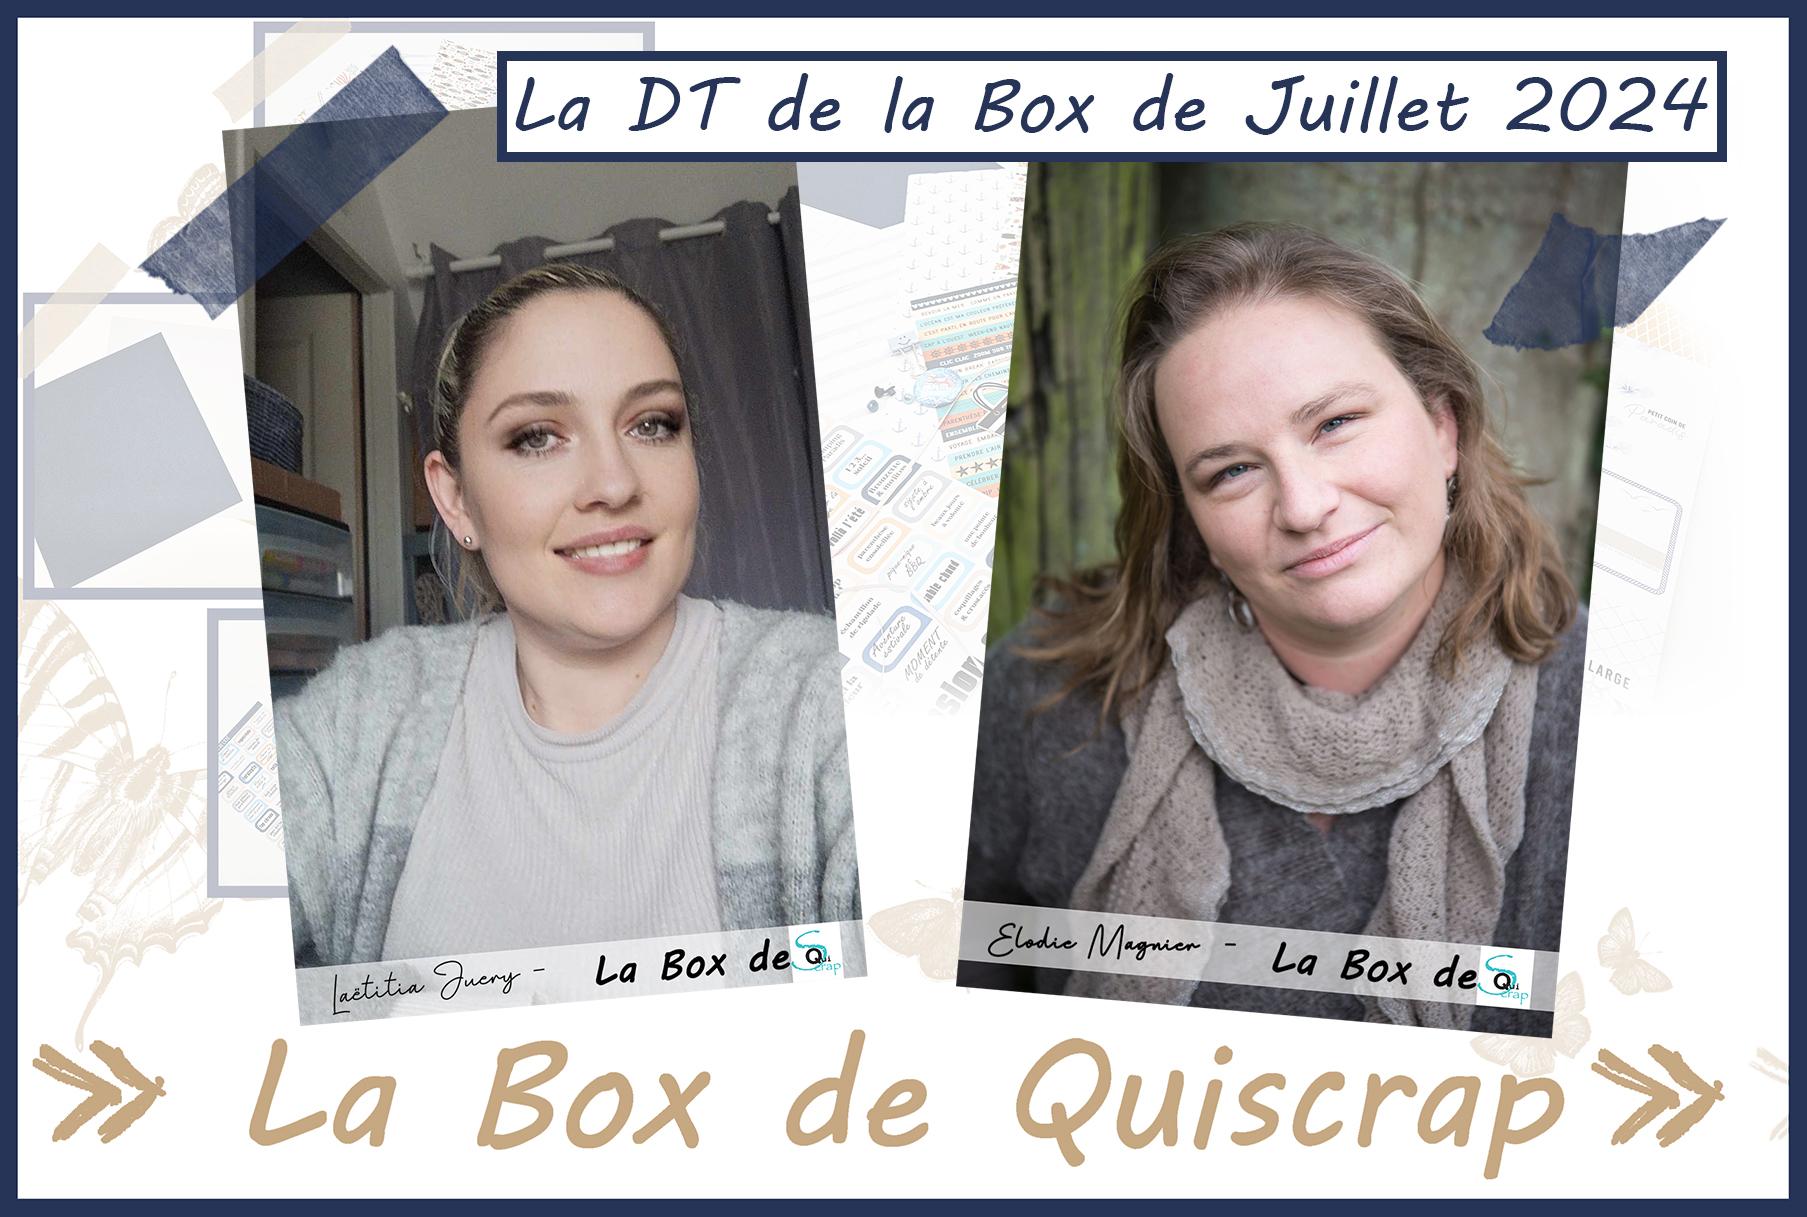 You are currently viewing La DT de la Box de Juillet 2024: Elodie Magnier et Laëtitia Juery